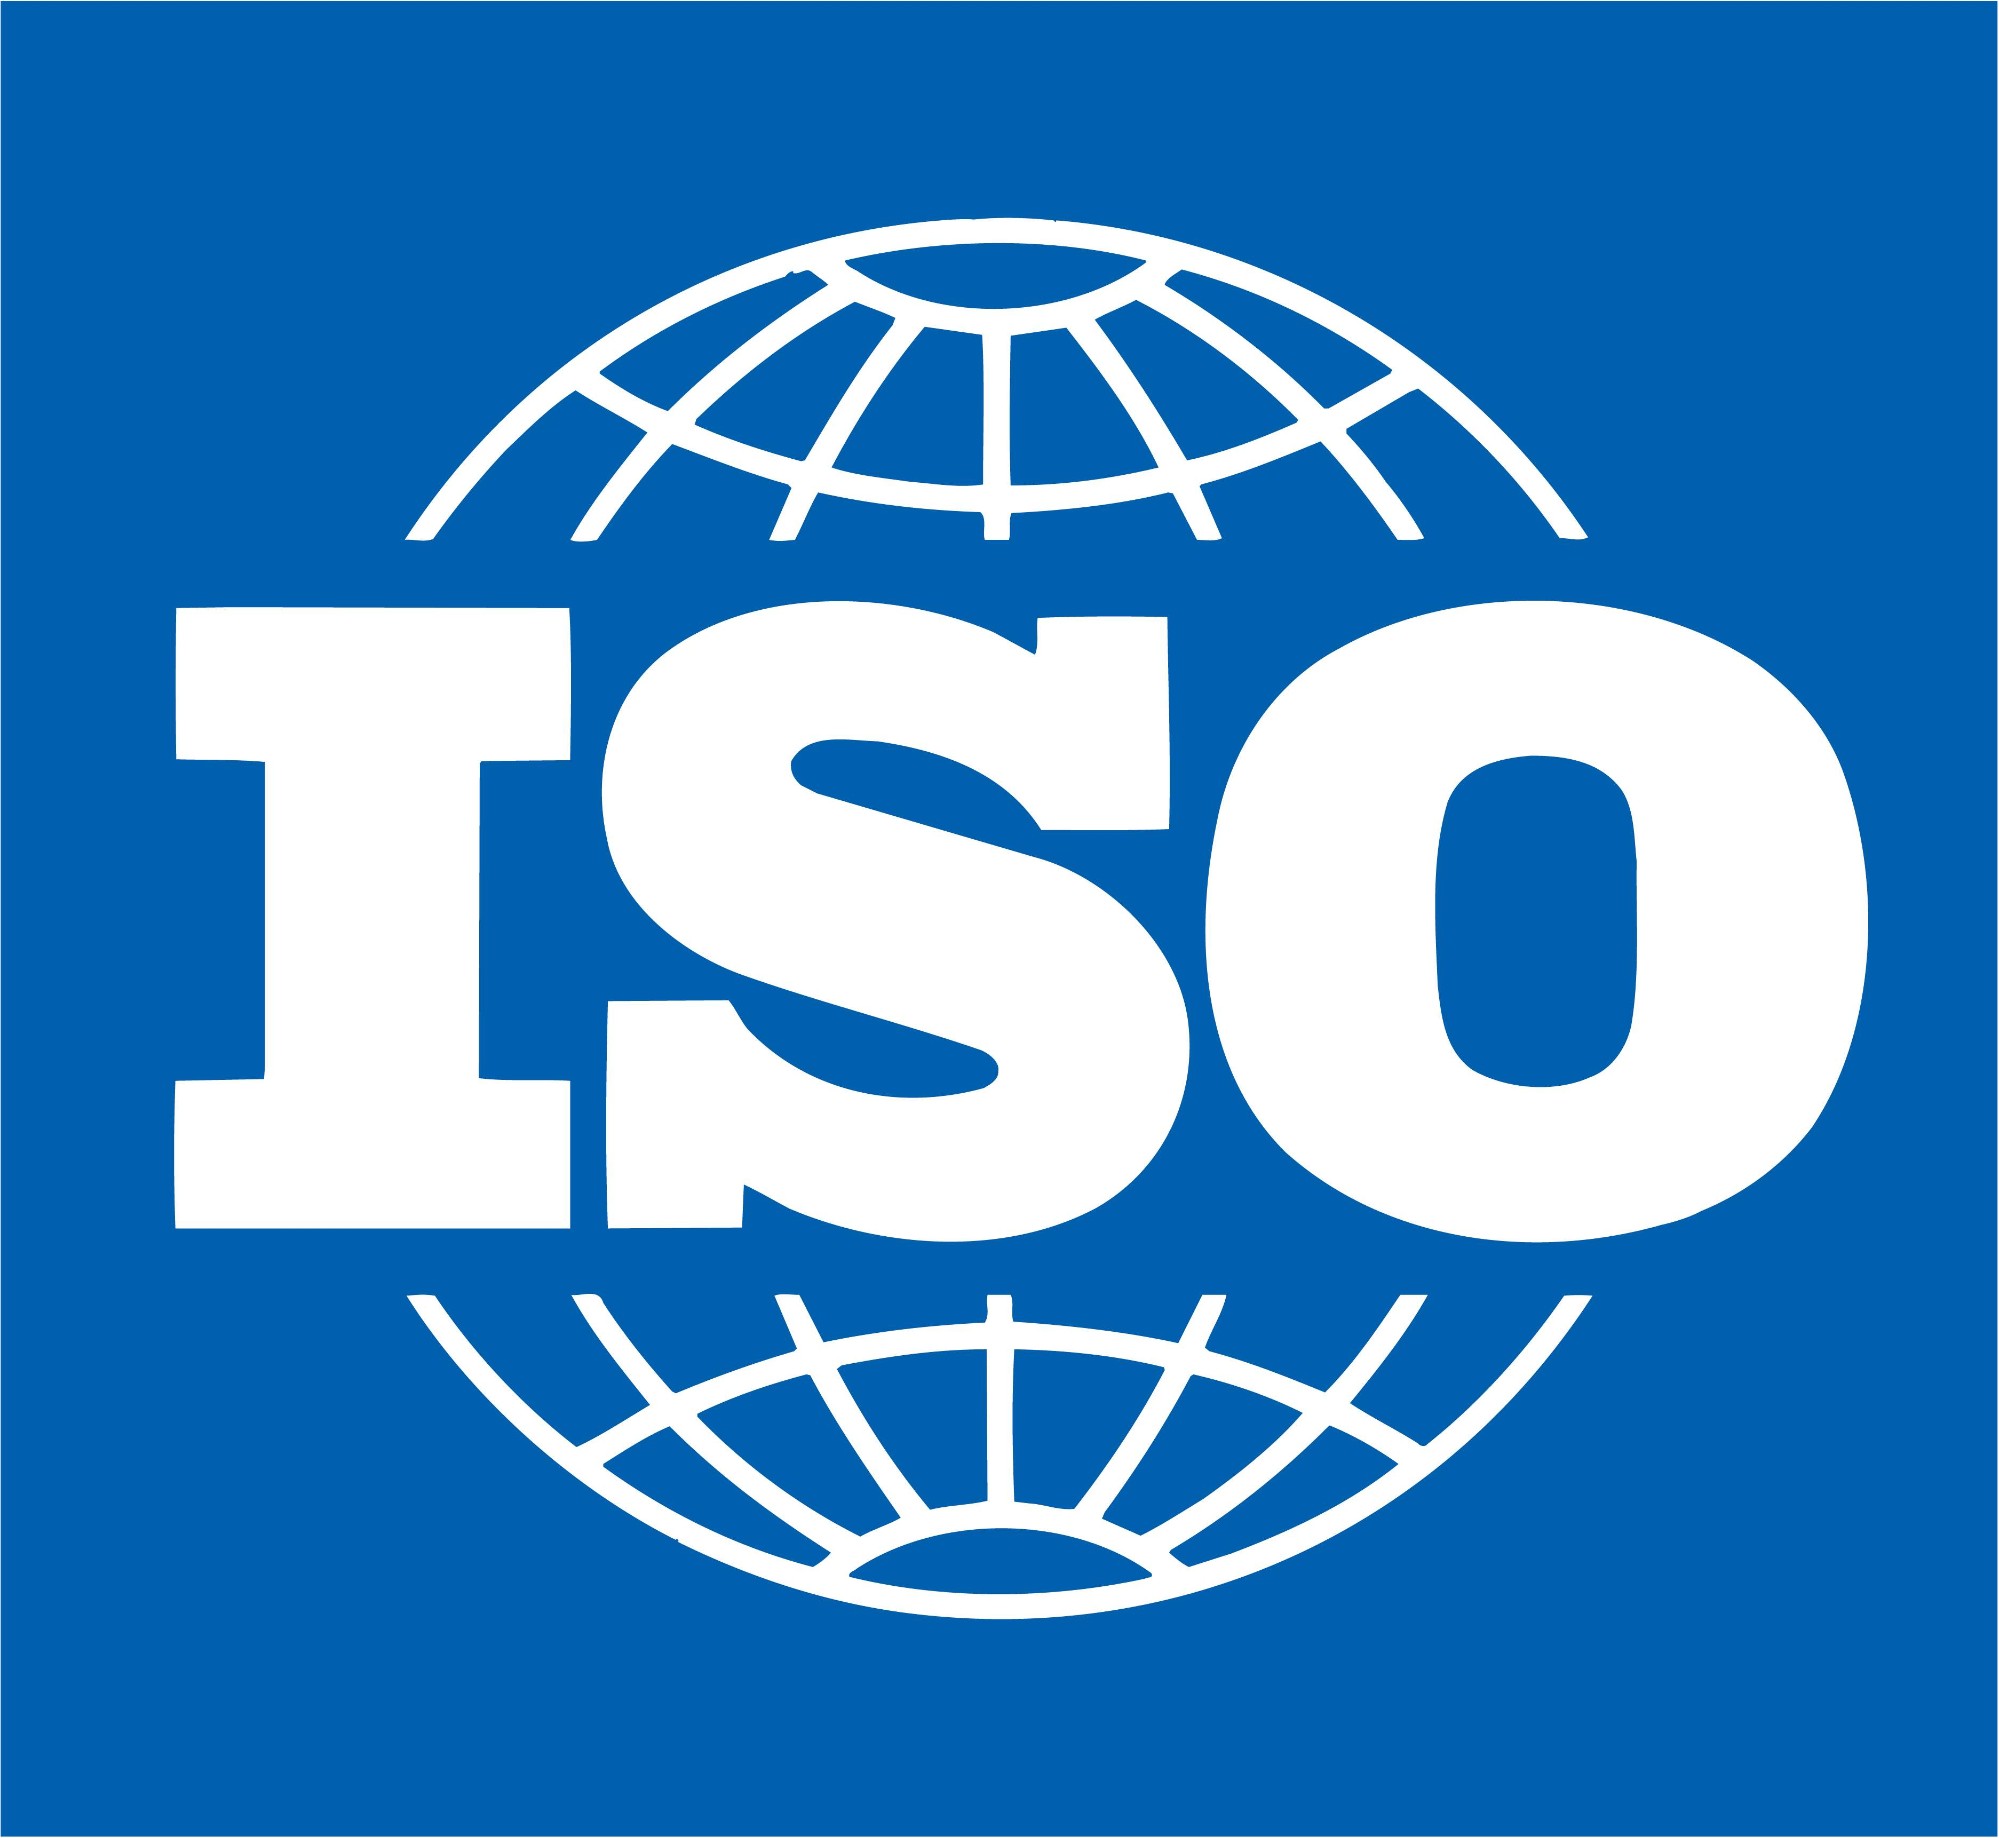 Mise à jour des normes ISO 9001 et ISO 14001